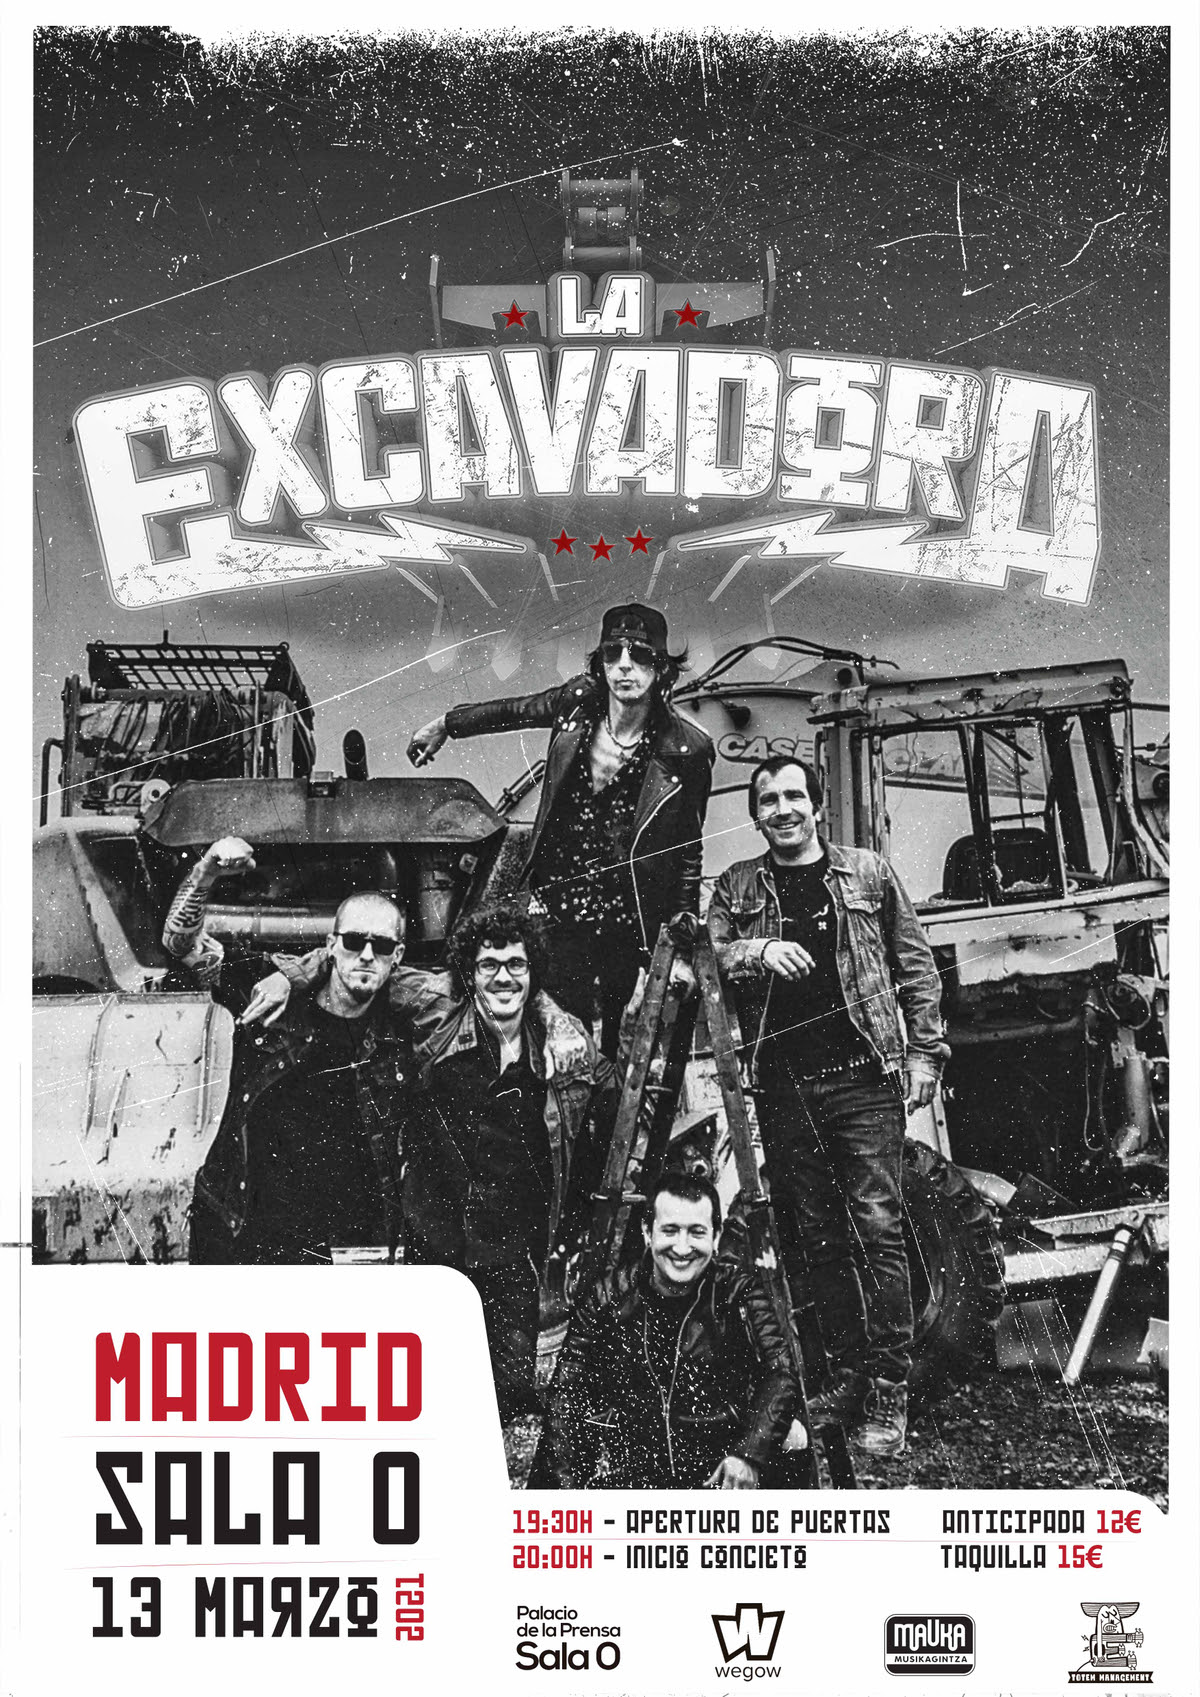 La Excavadora estará en Madrid el sábado 13 de marzo